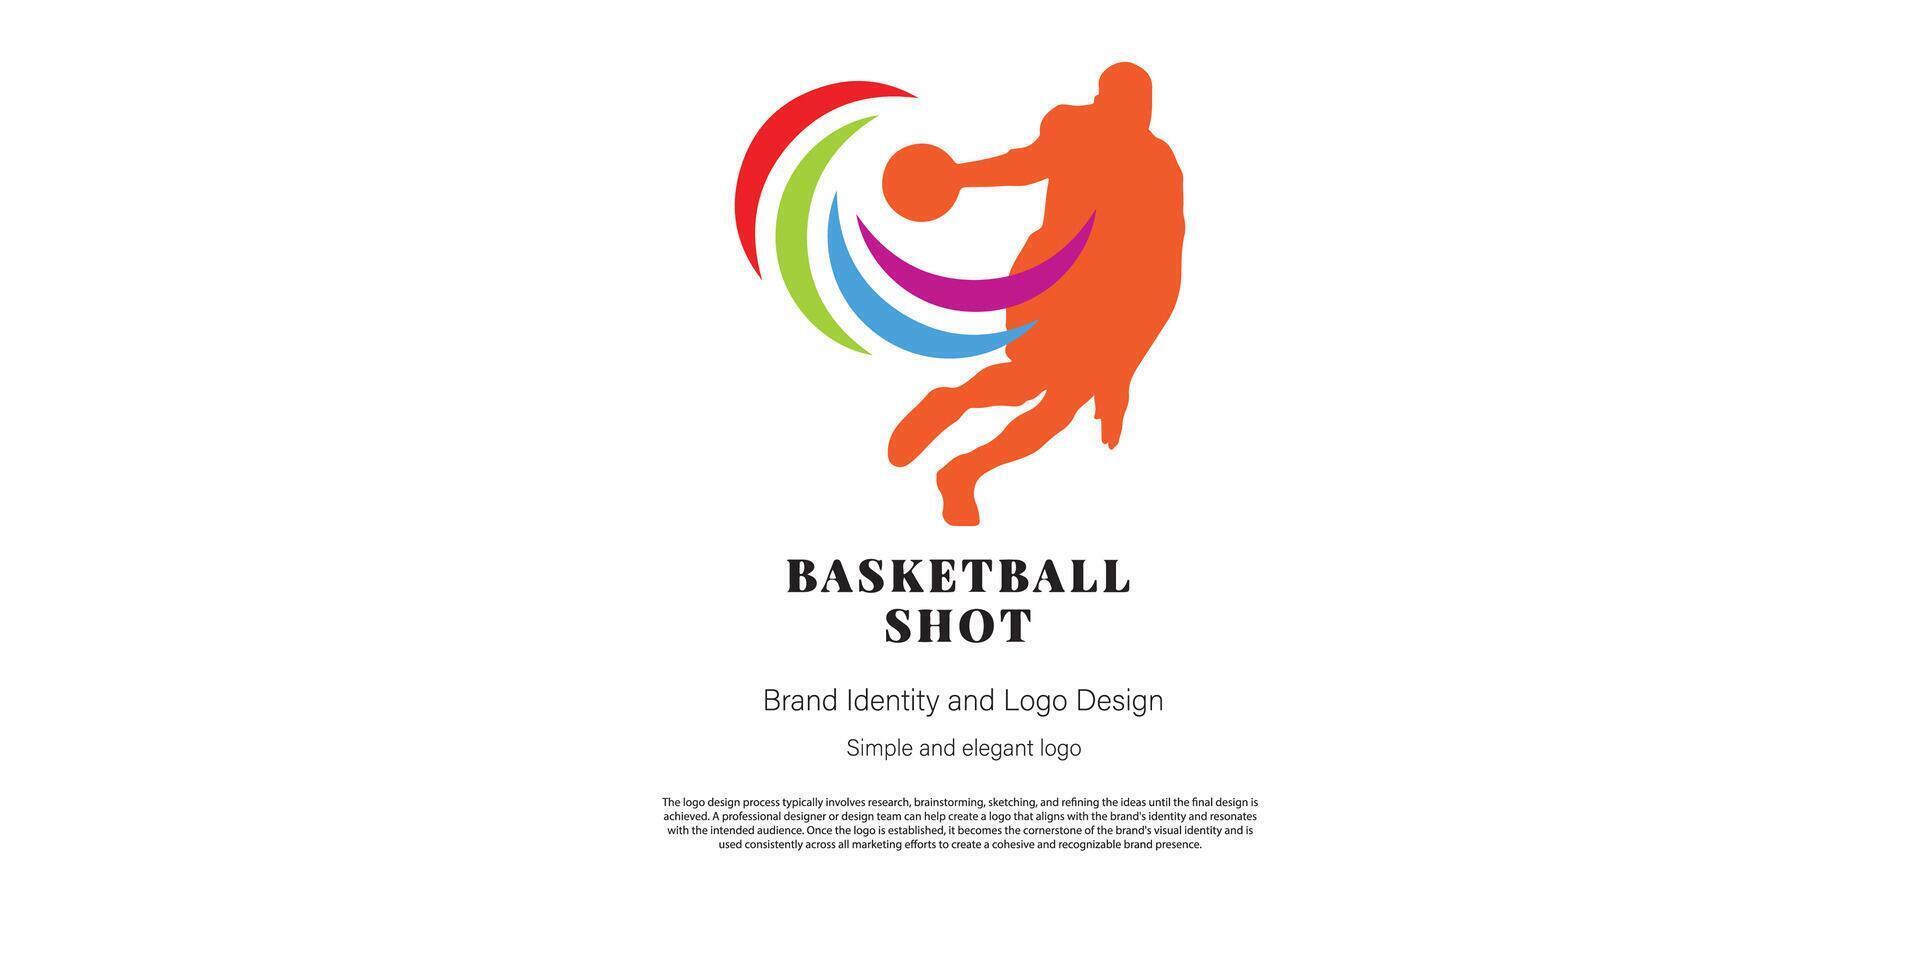 basketboll logotyp design för klubb eller logotyp designer vektor